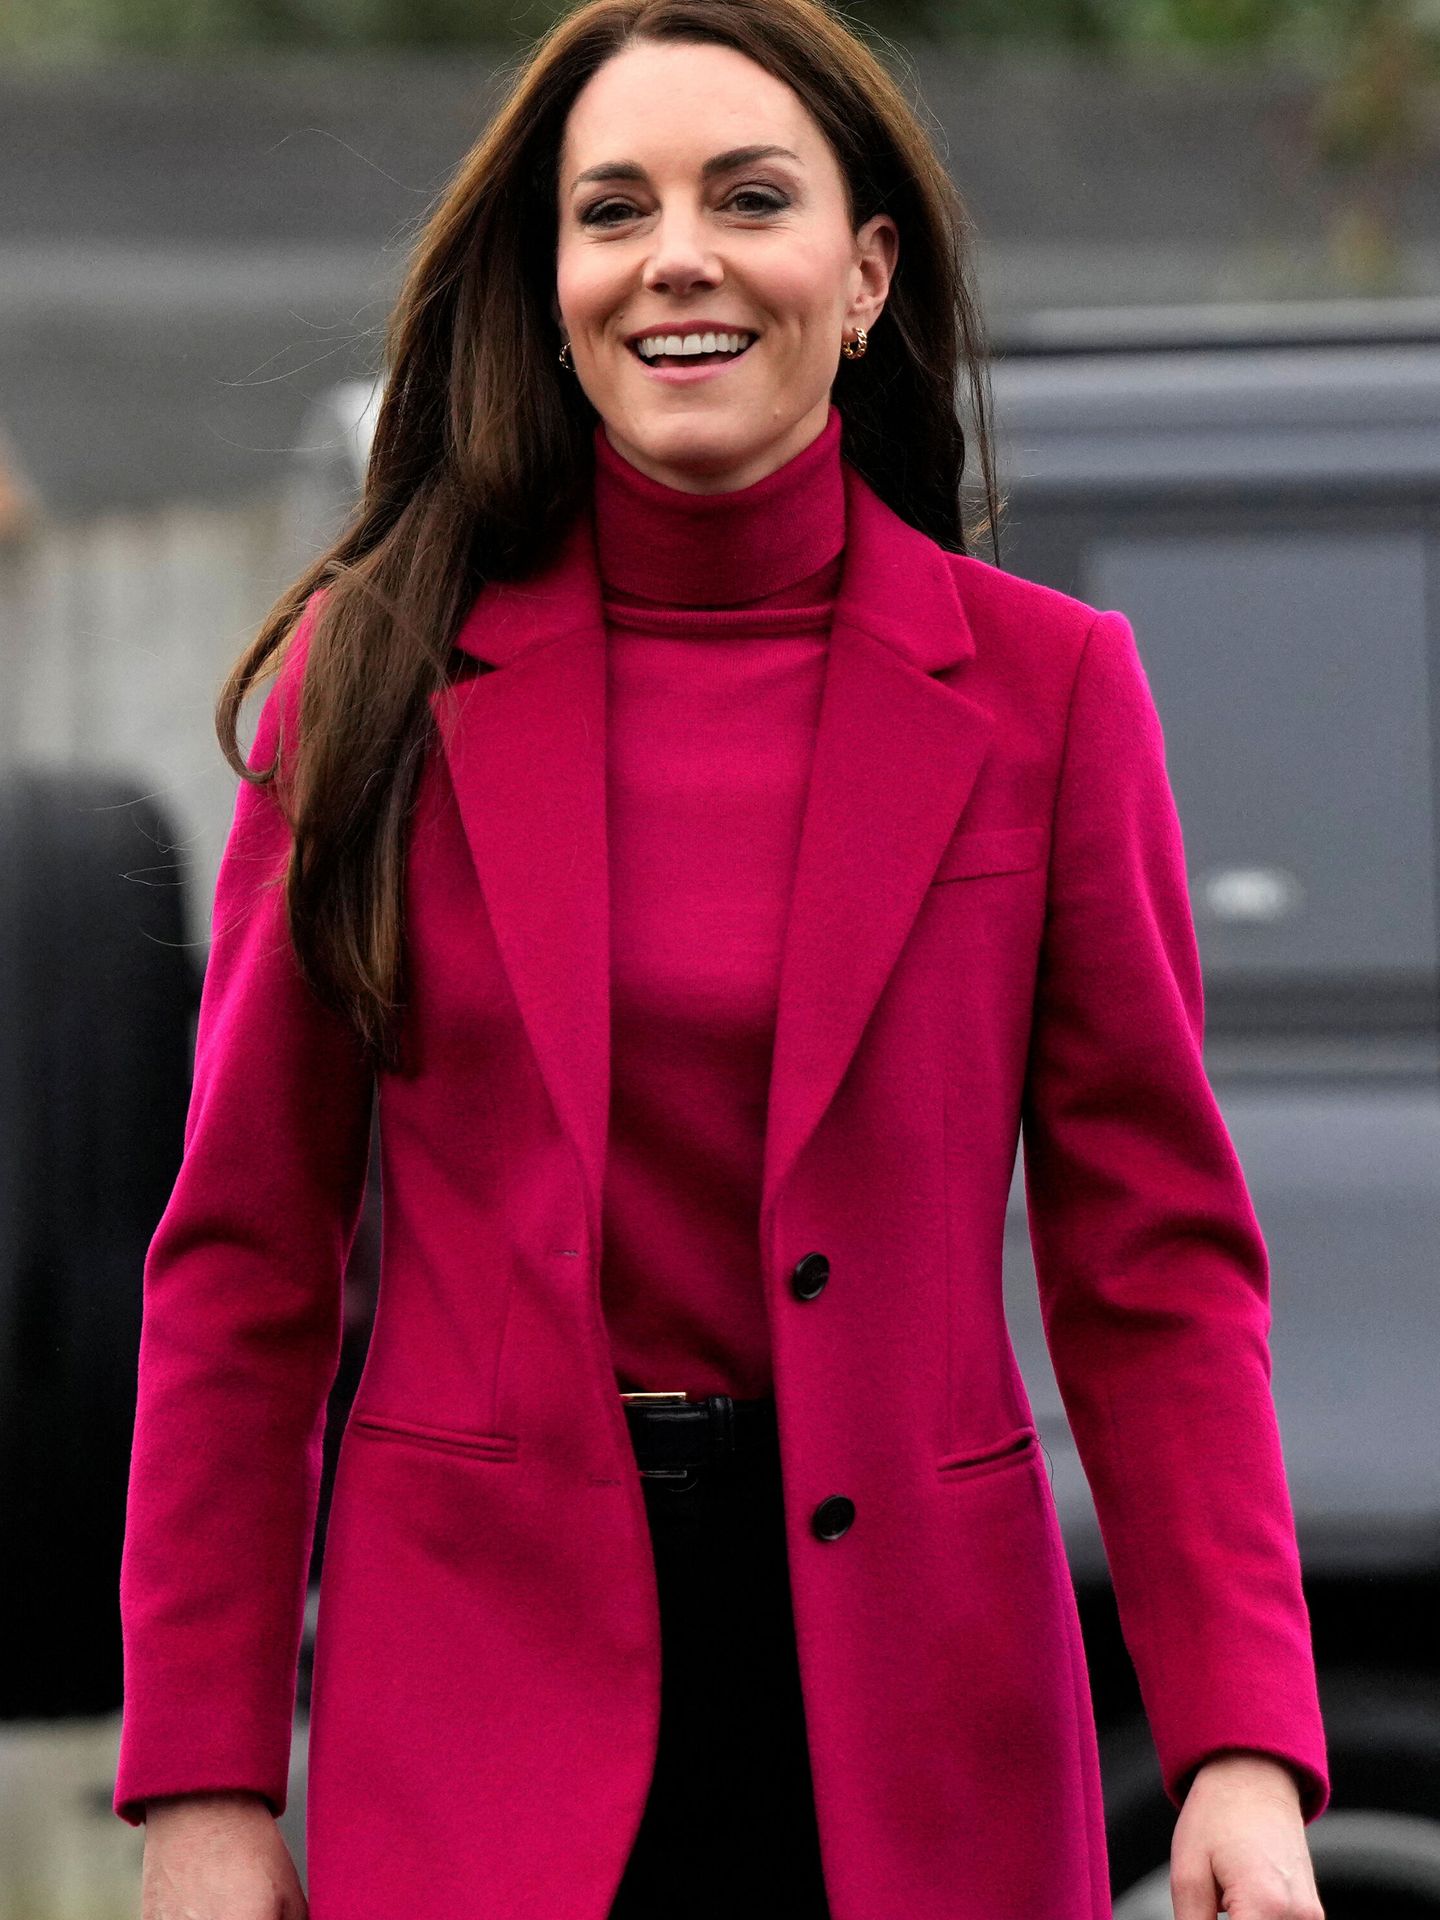 La princesa de Gales, con look reciclado. (Reuters/Pool/Alastair Grant)